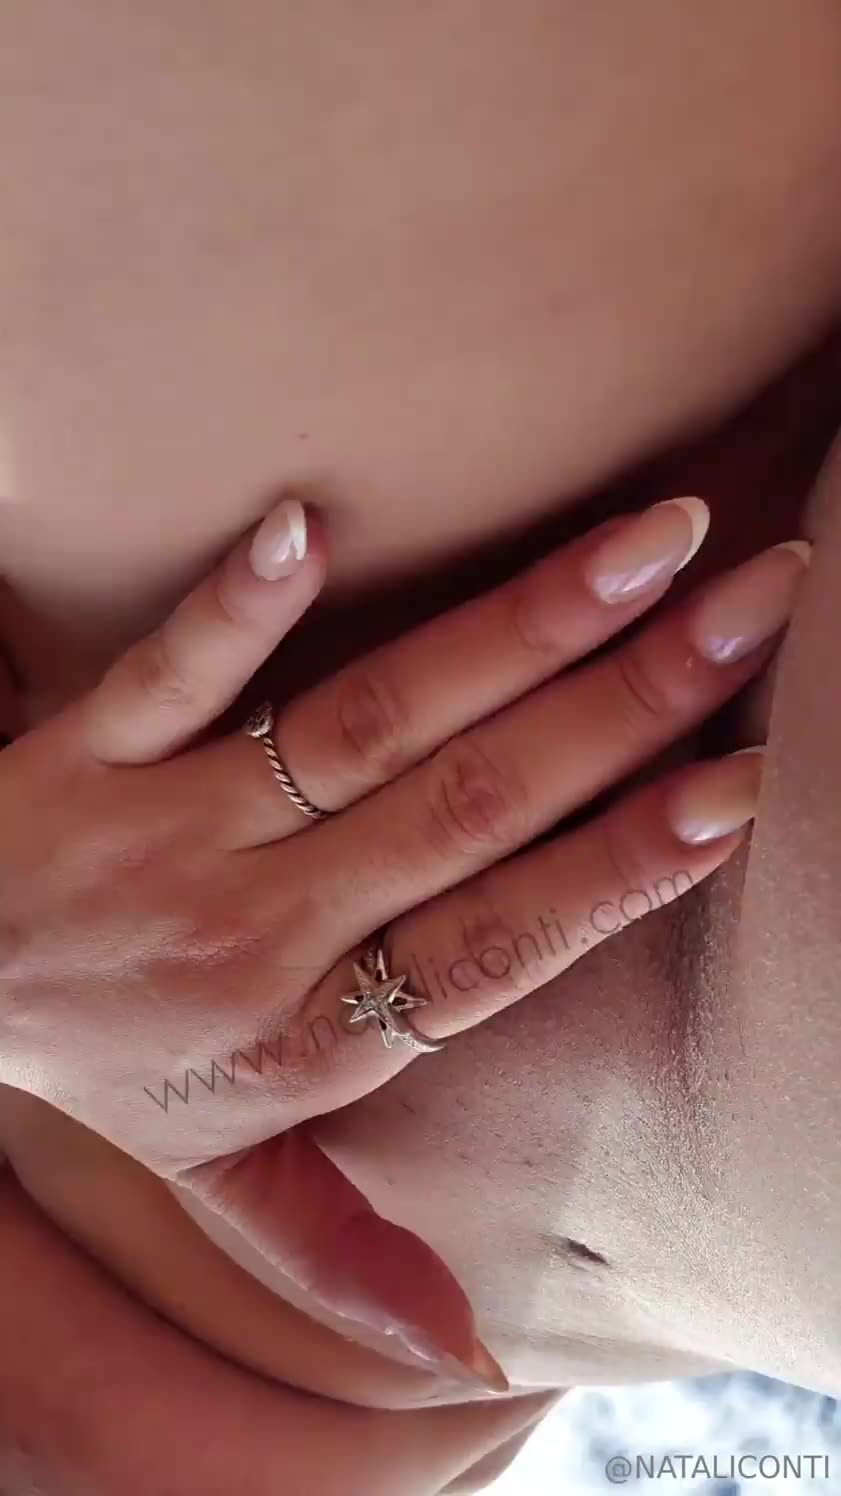 xxx Natali Conti peladinha socando os dedos na buceta carnuda e beiçuda mulher pelada xvideos